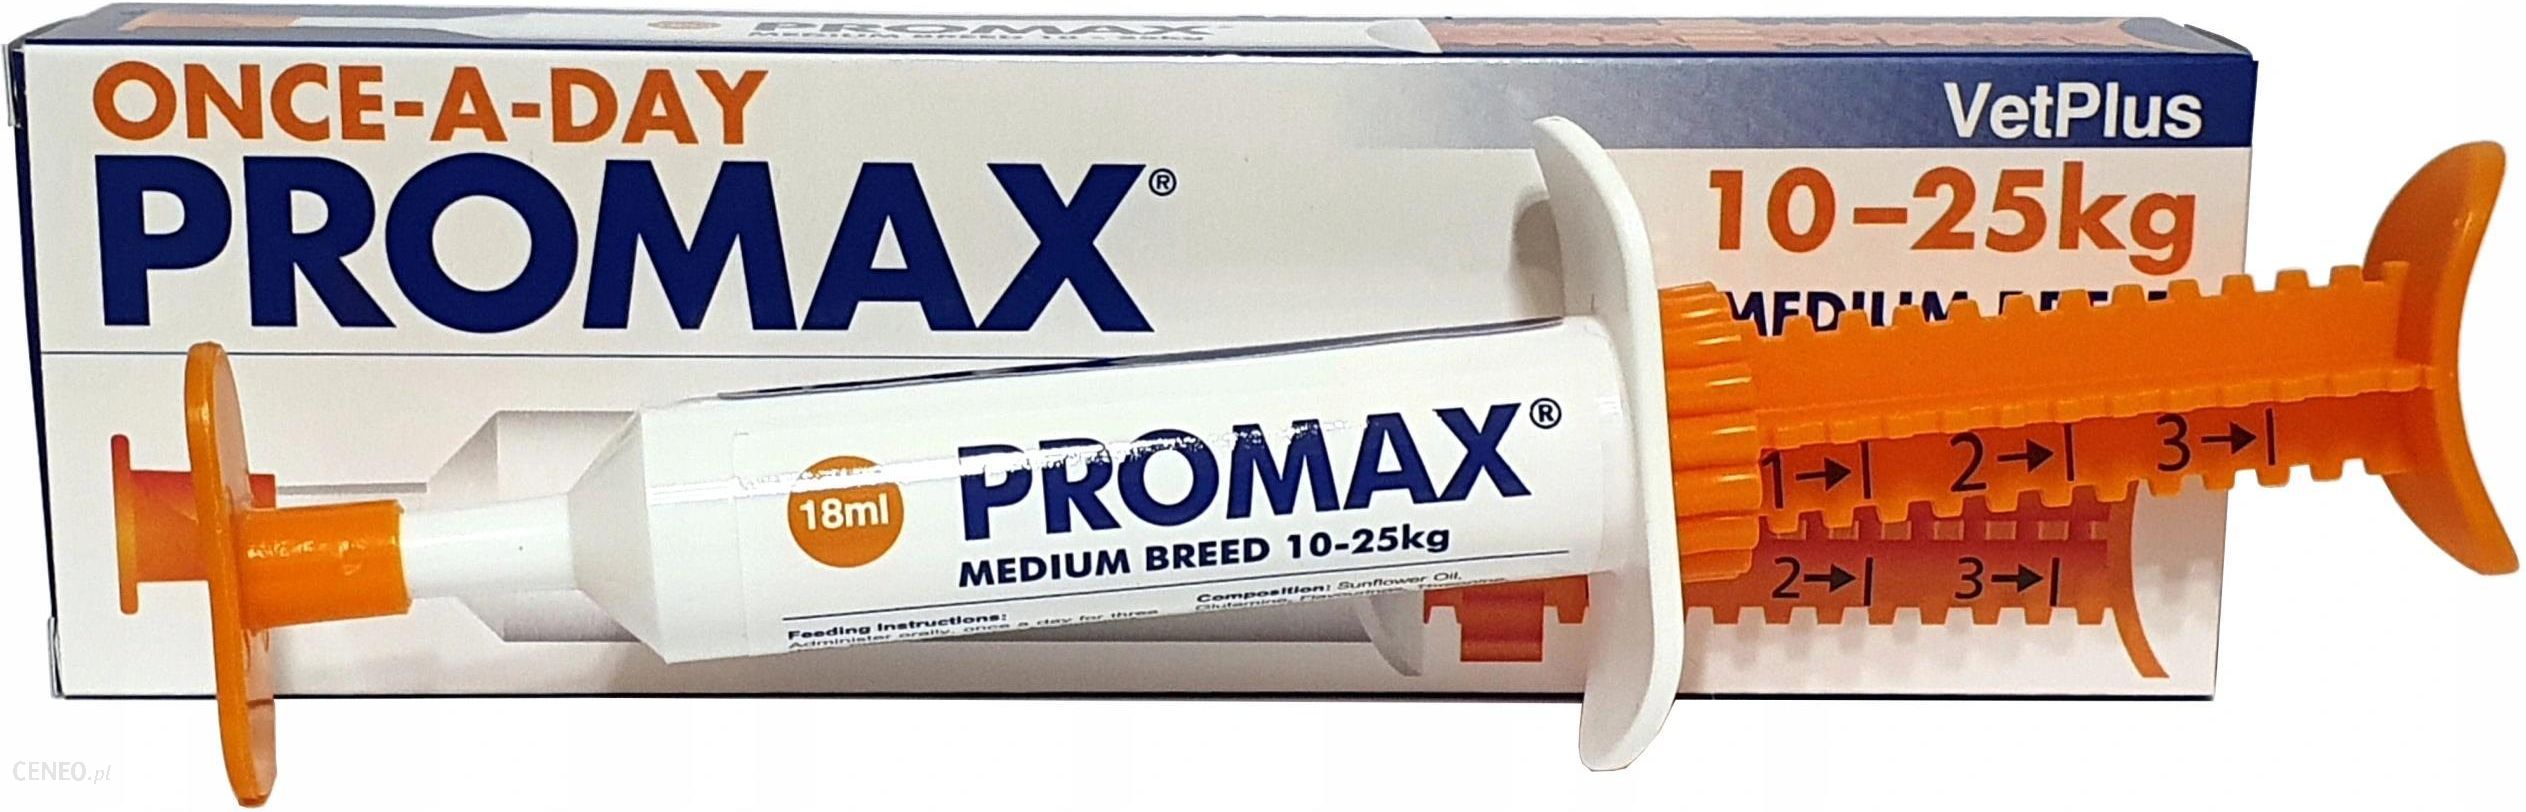 Vetplus Promax Medium Breed Pasta Probiotyczna 18ml - Ceny i opinie -  